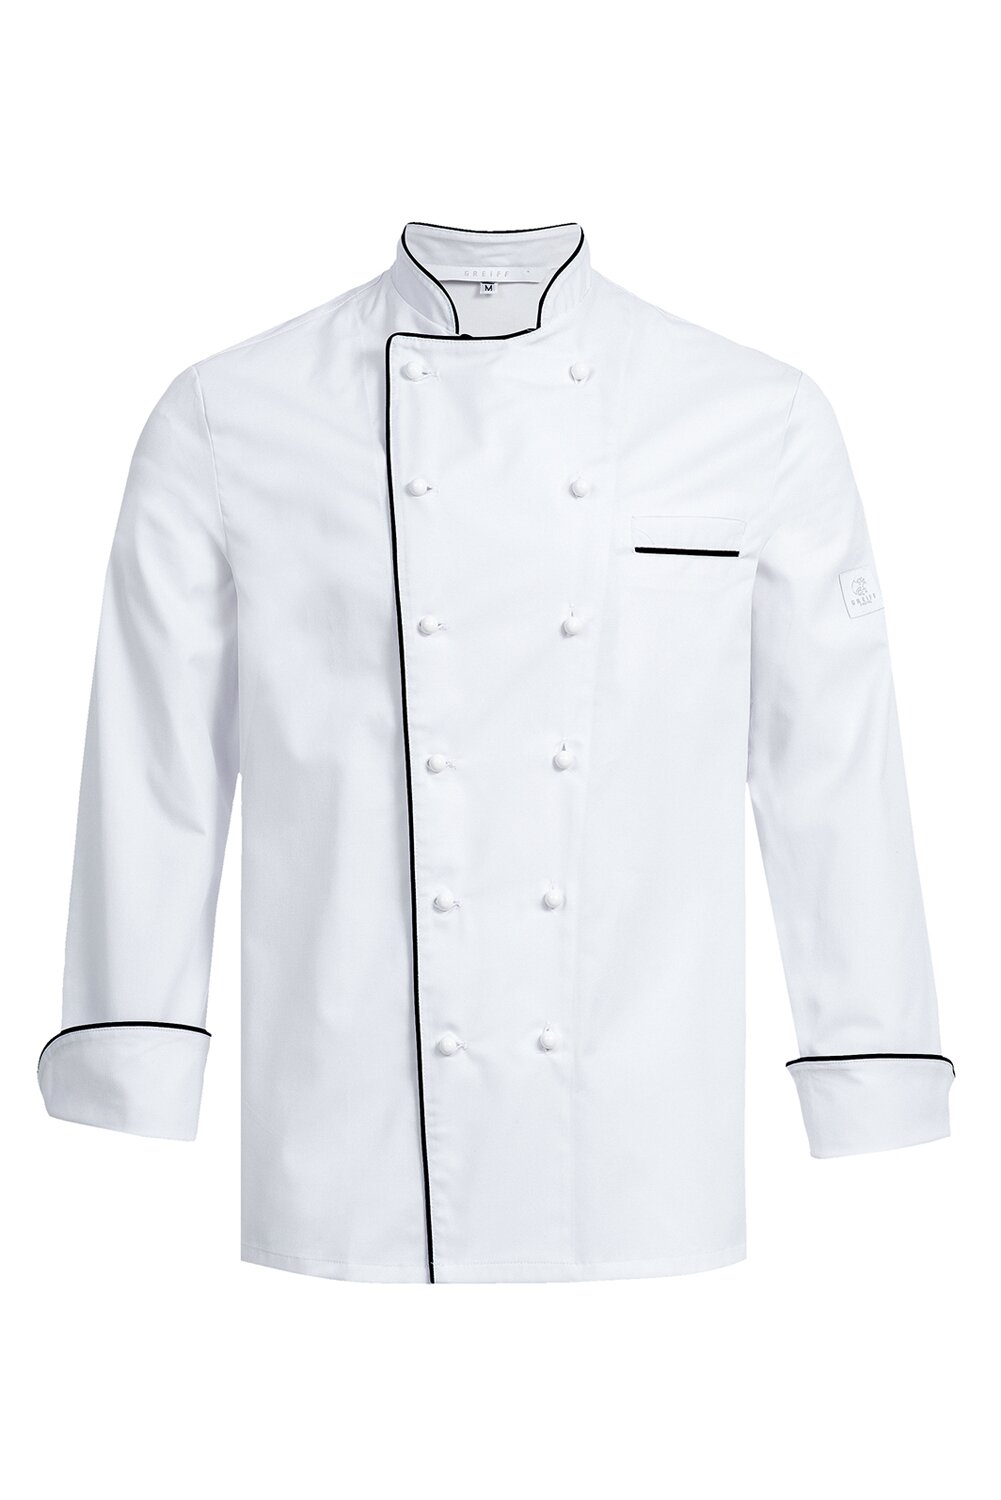 Langarm Koch Jacke Schwarz oder Weiß, Nieten Befestigung Unisex Koch Kleidung 